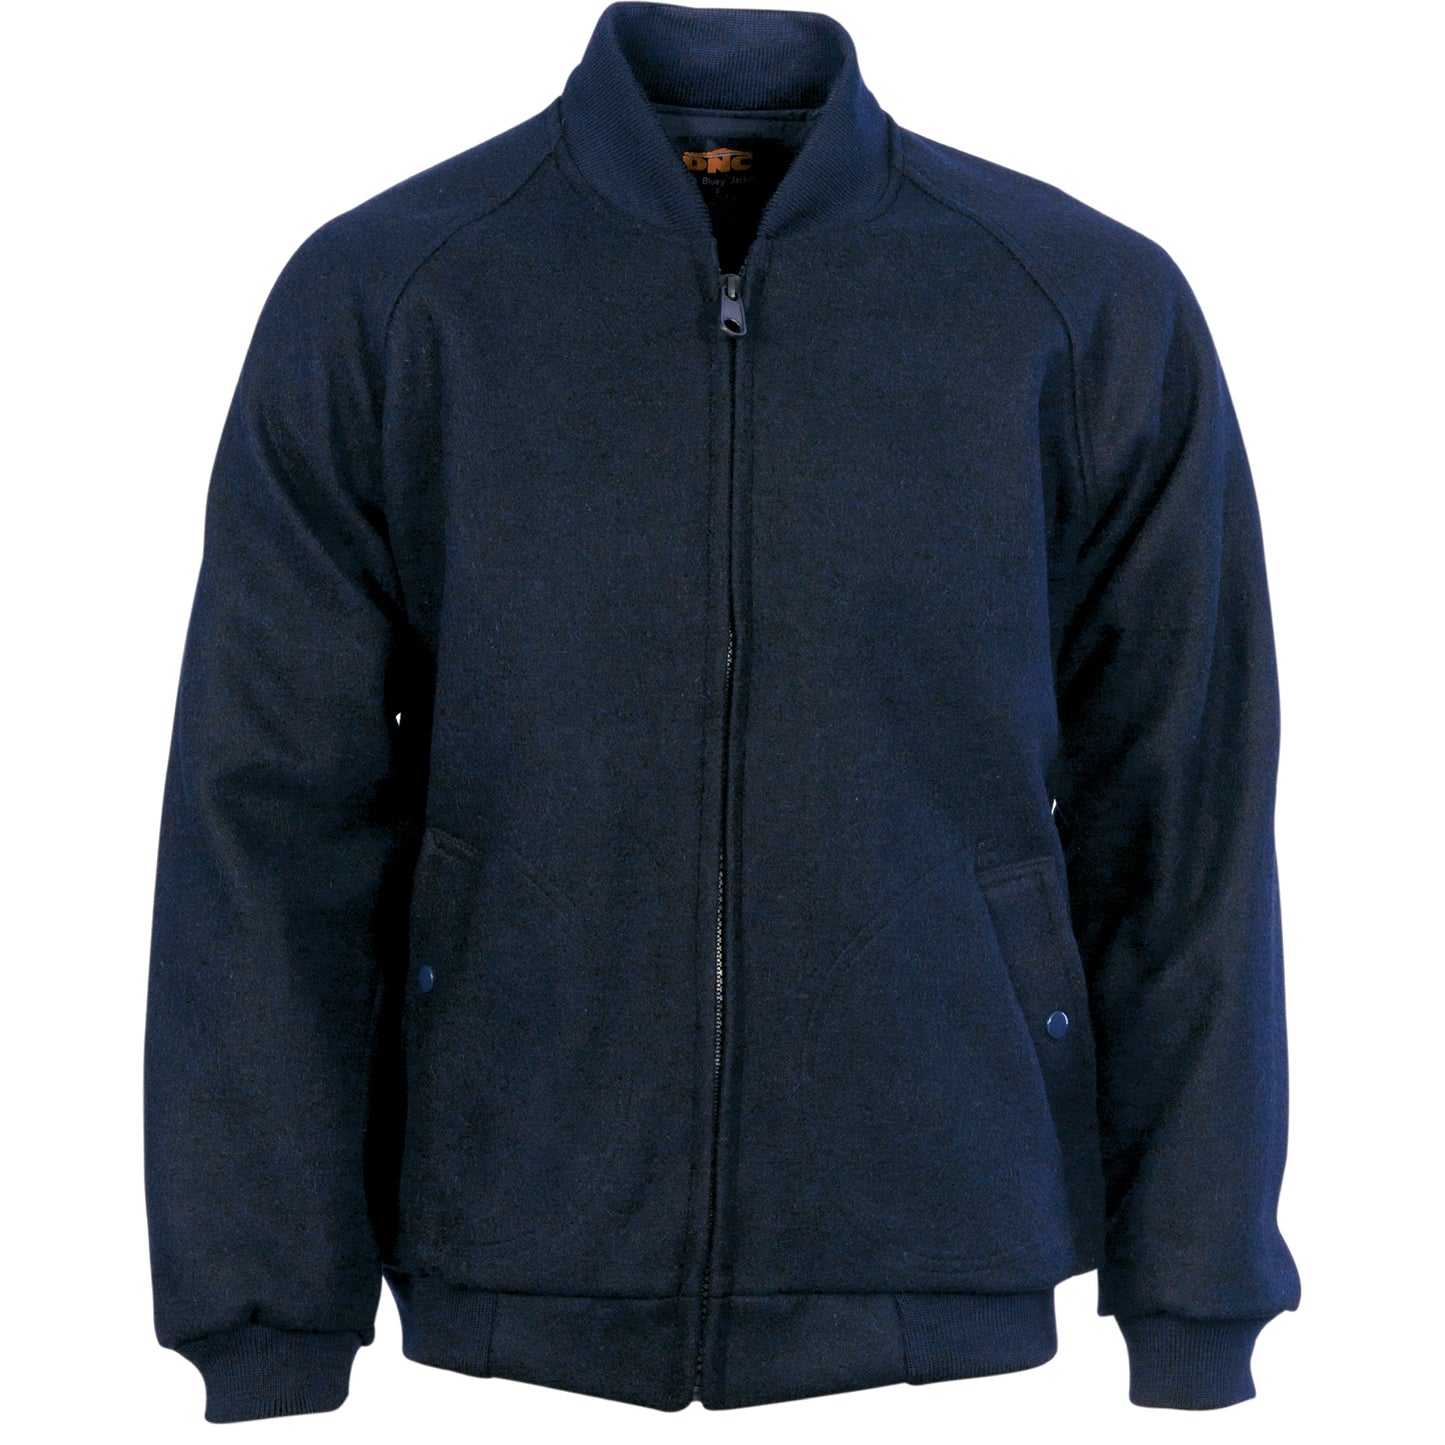 DNC Bluey Jacket With Ribbing Collar & Cuffs (3602)